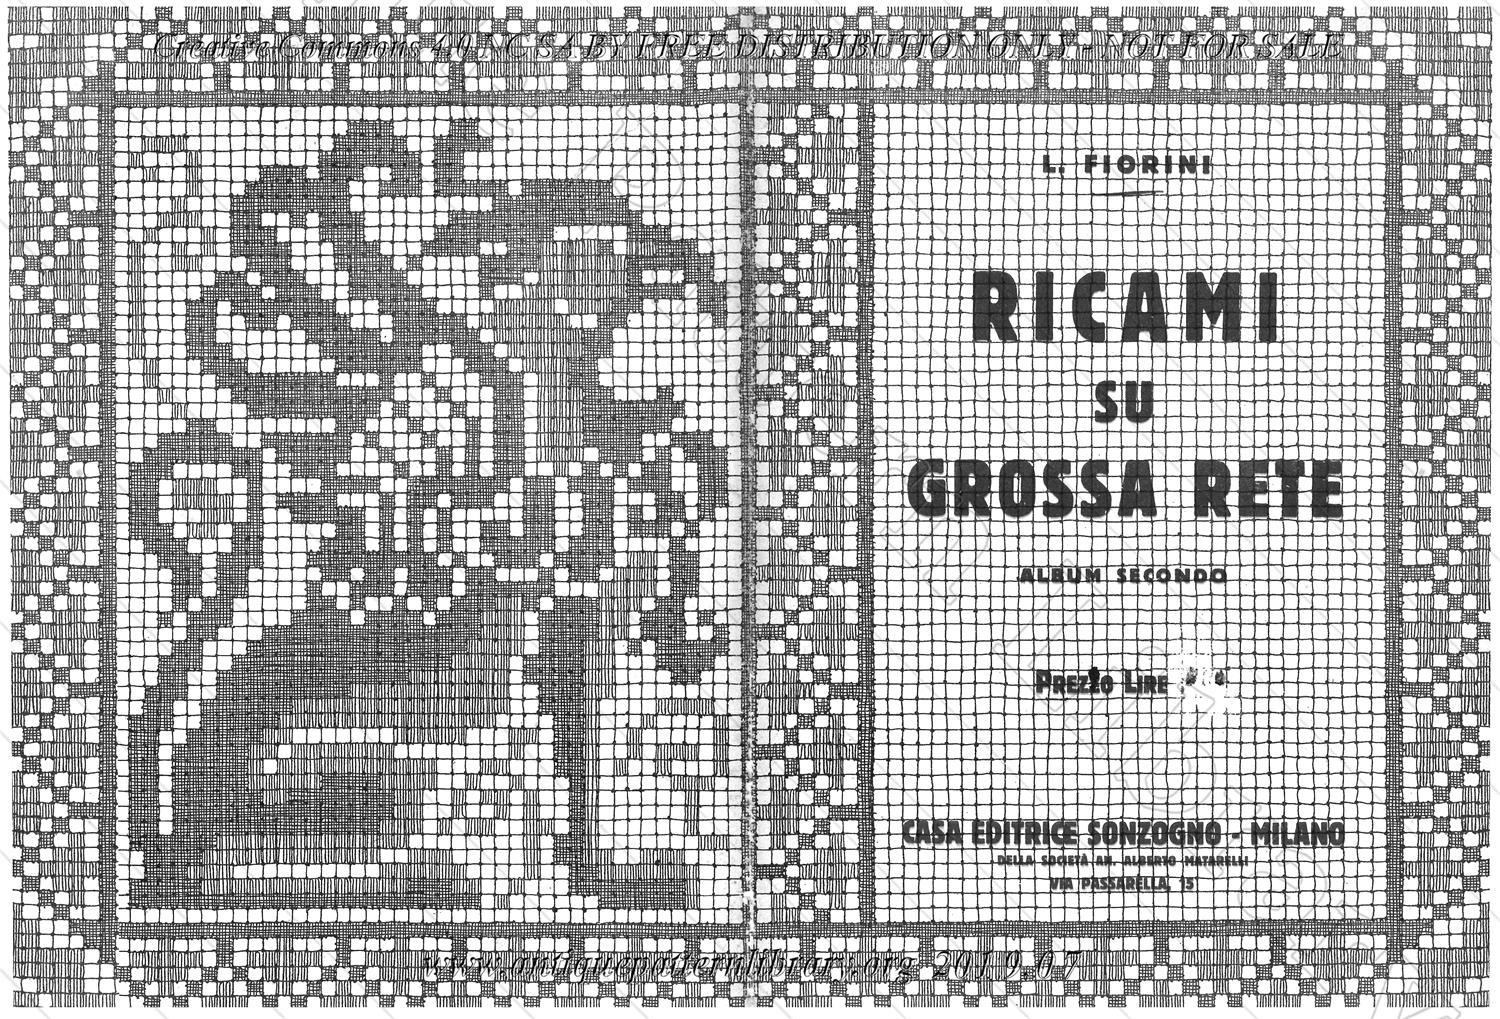 D-II008 Ricami du Grossa Rete, Album Secondo